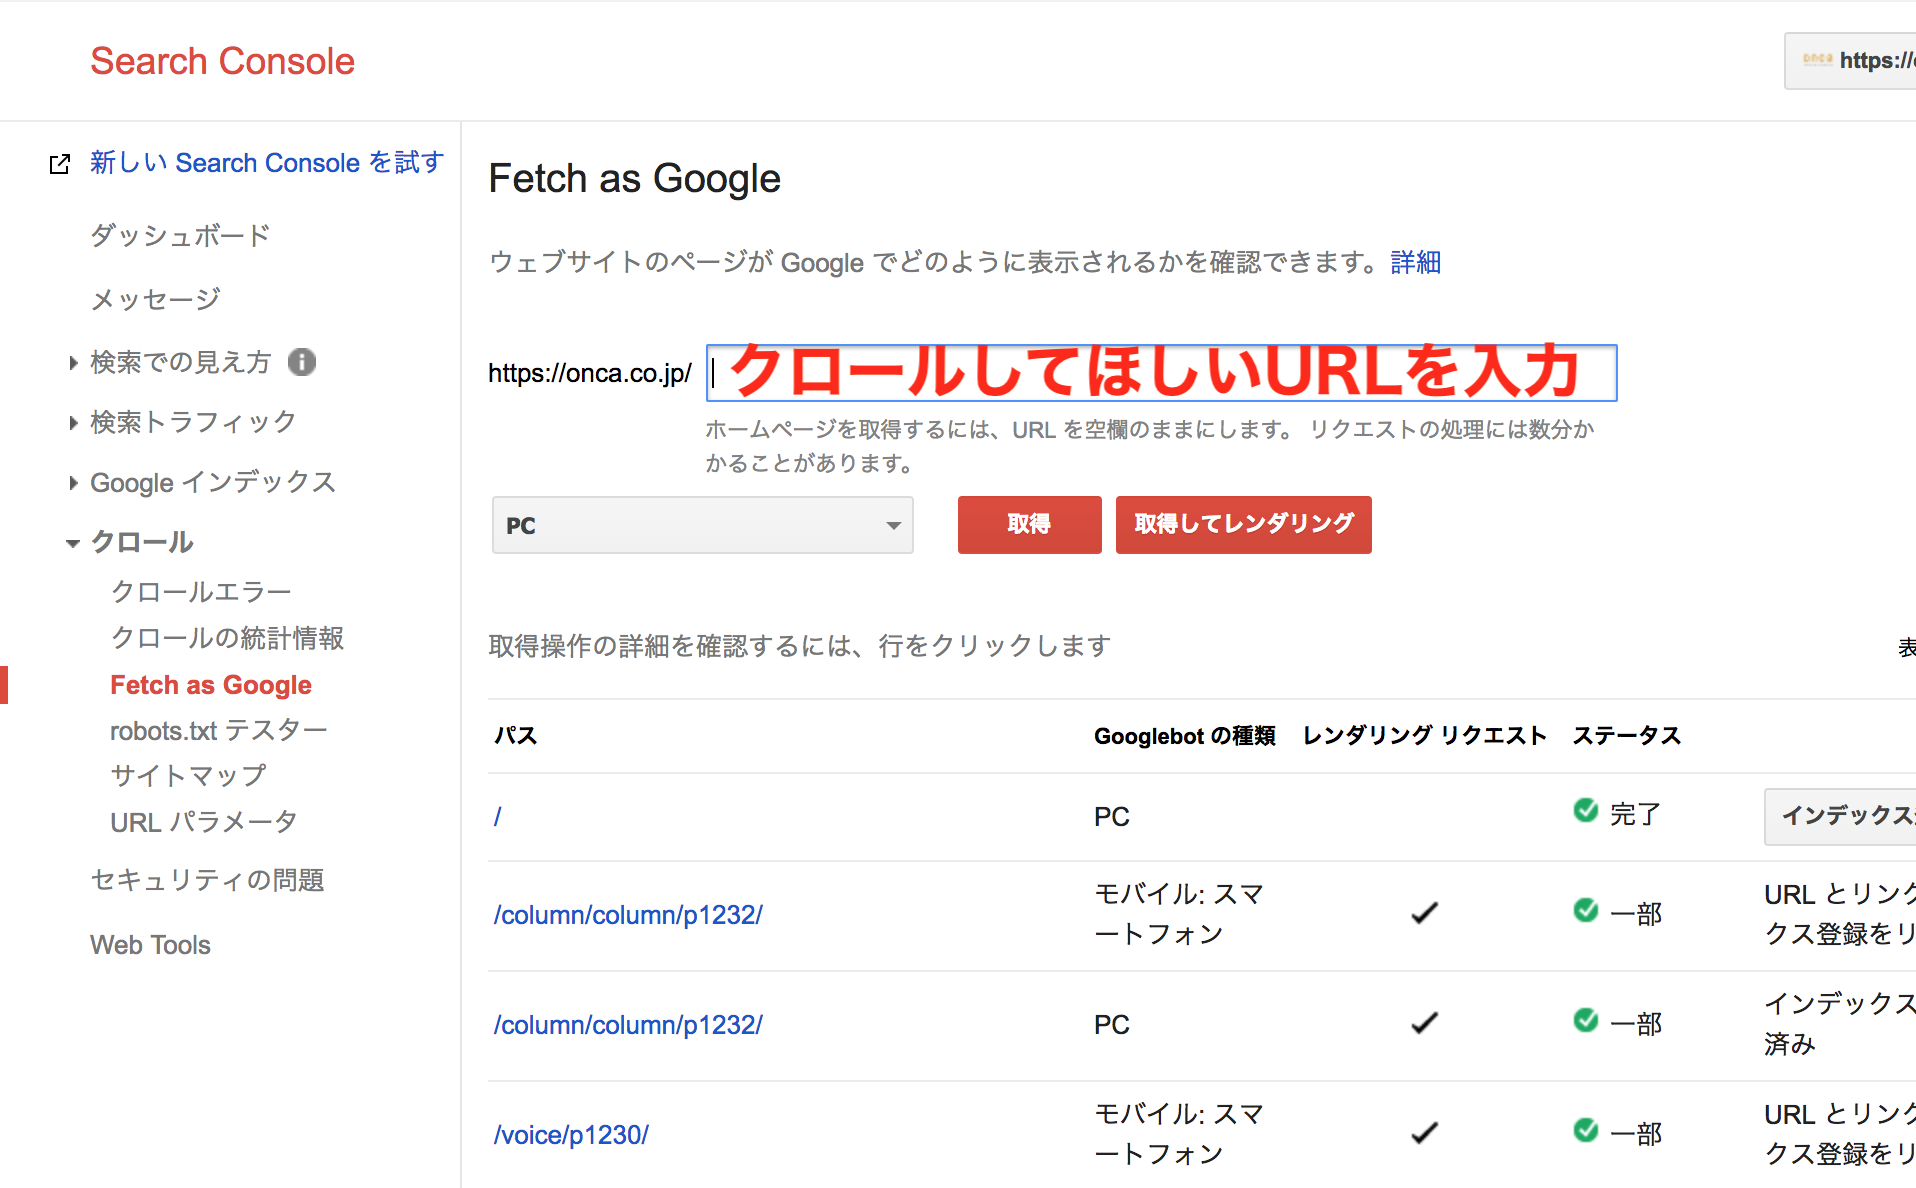 Fetch as Google②